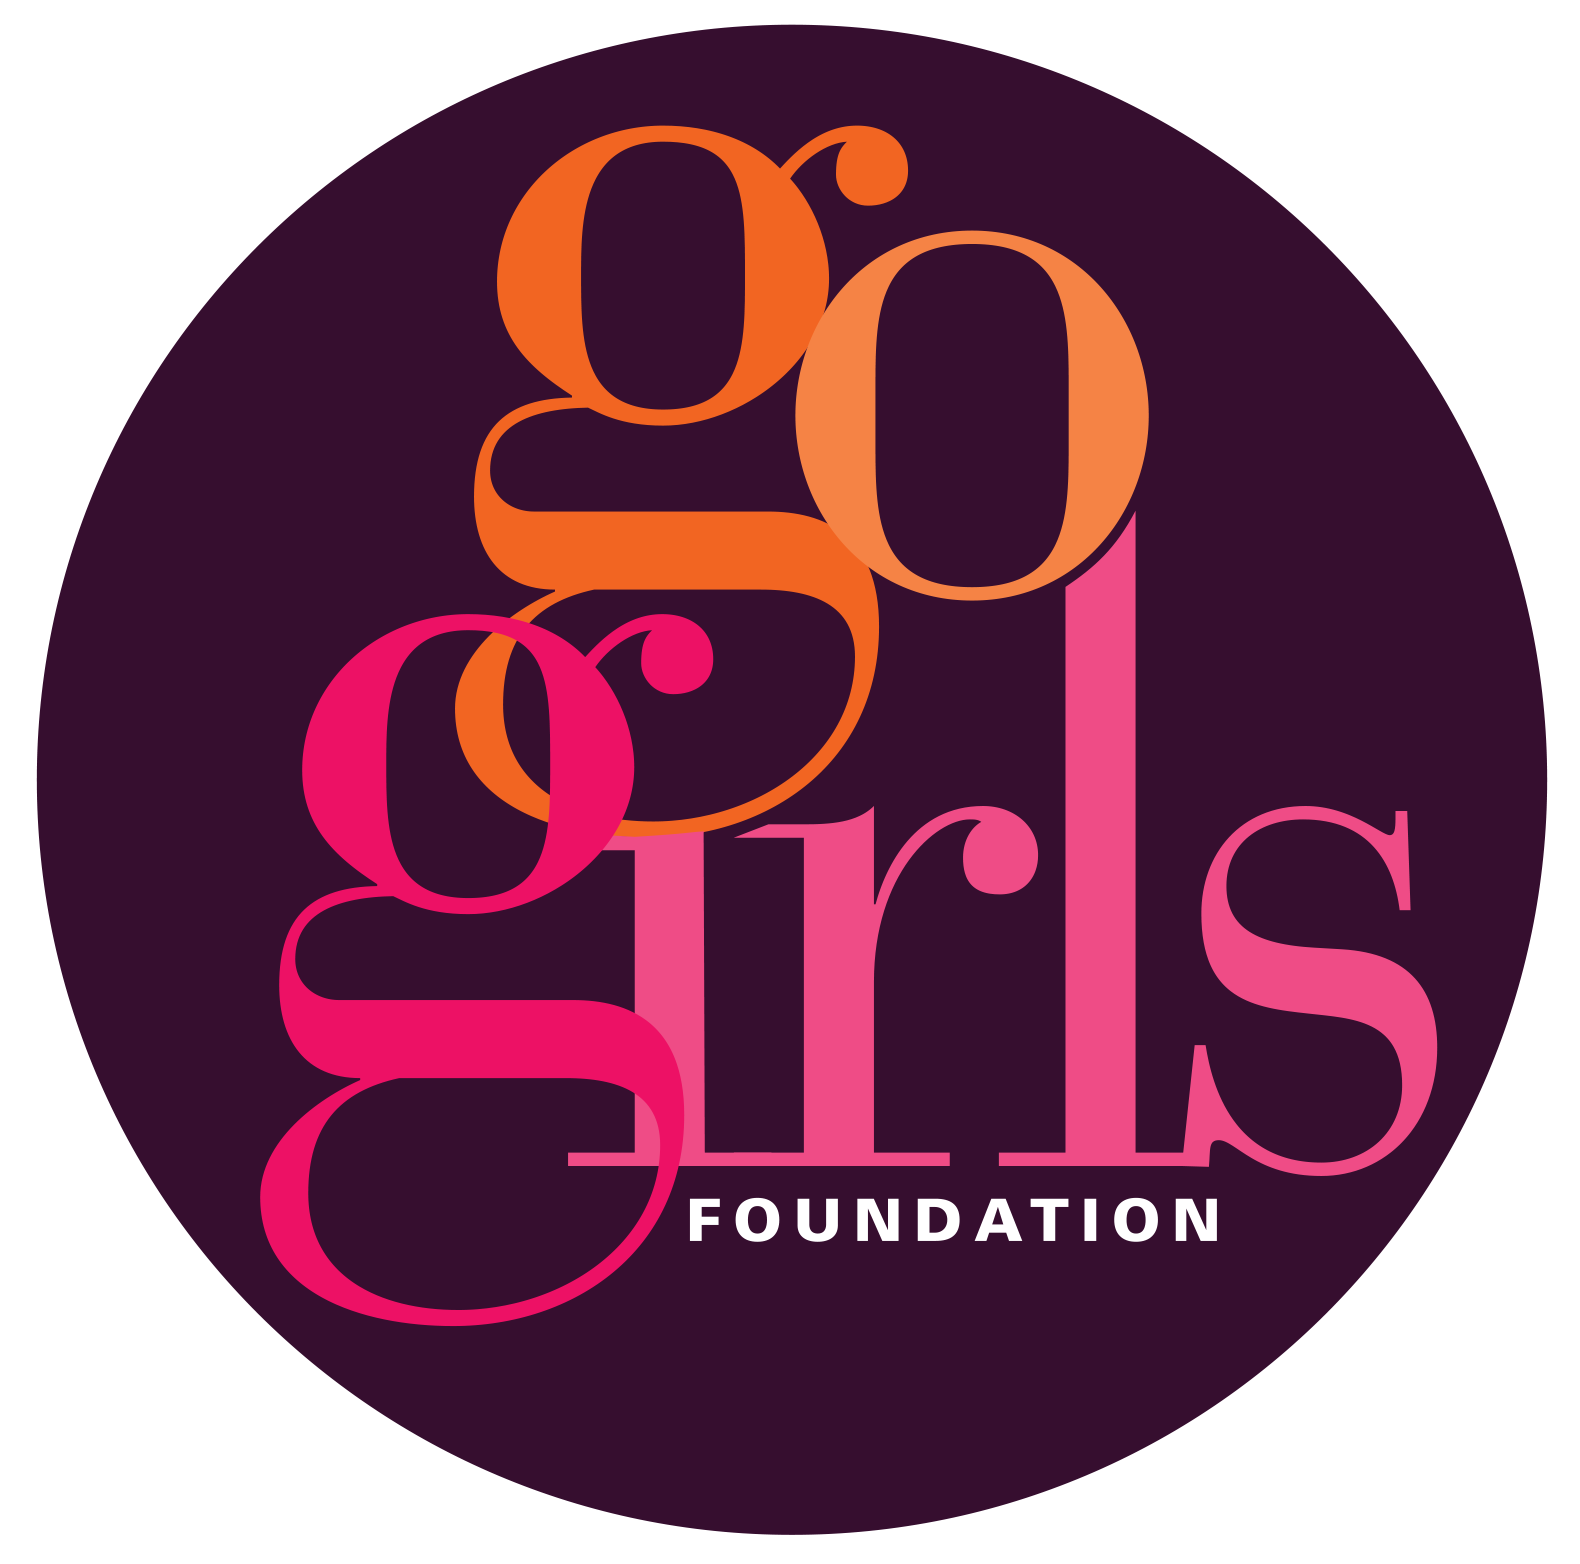 Go Girls logo